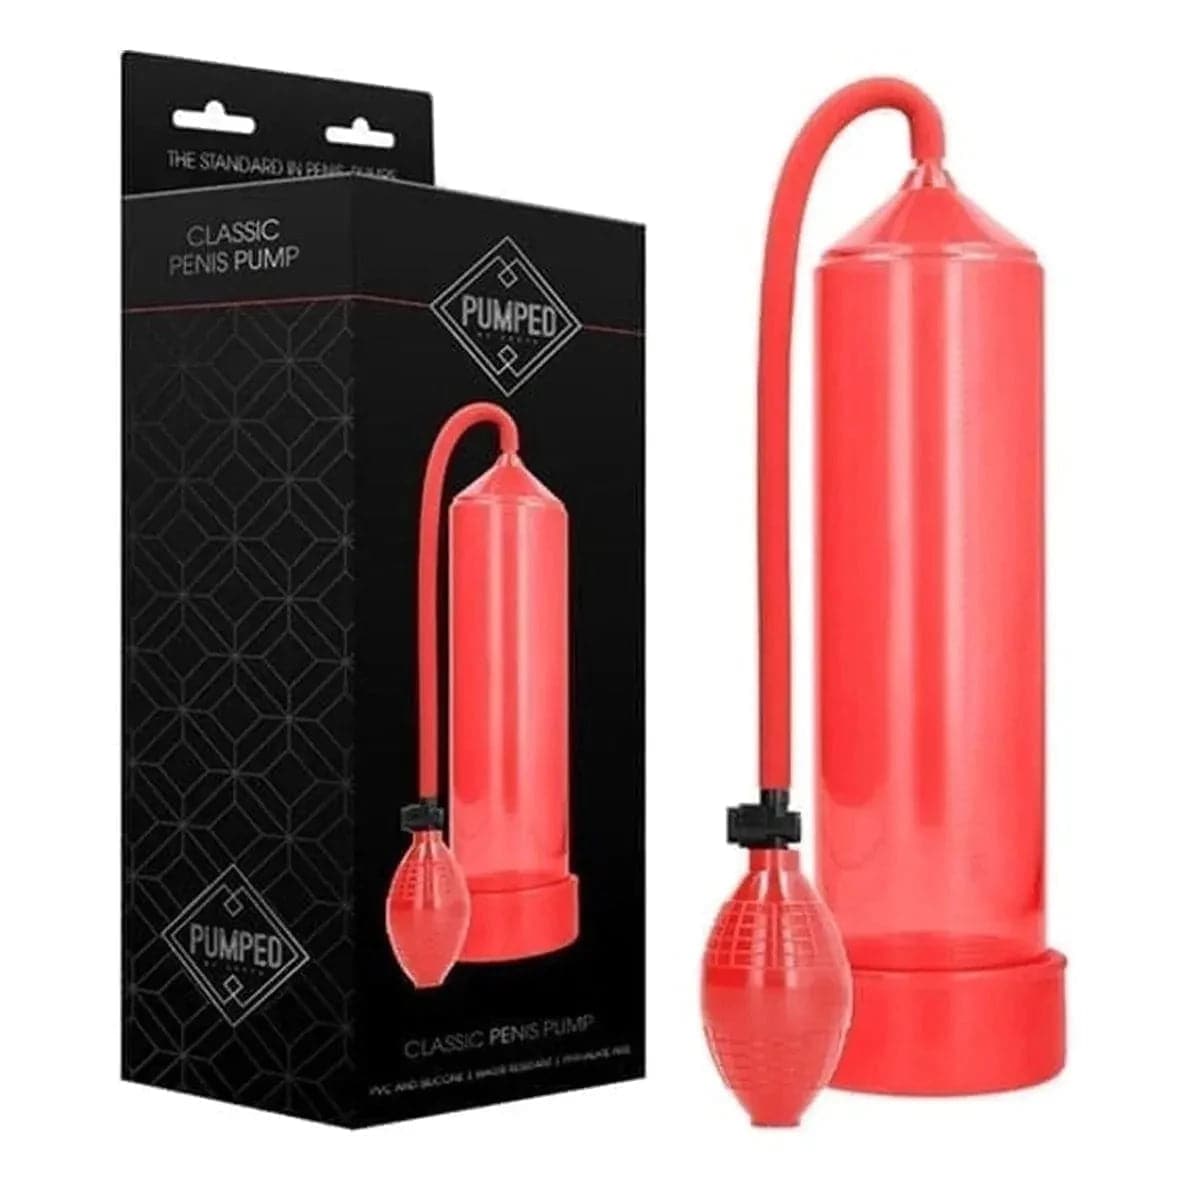 Classic Penis Pump Vermelho, Boa Sucção, 23cm Ø6cm - Pérola SexShop